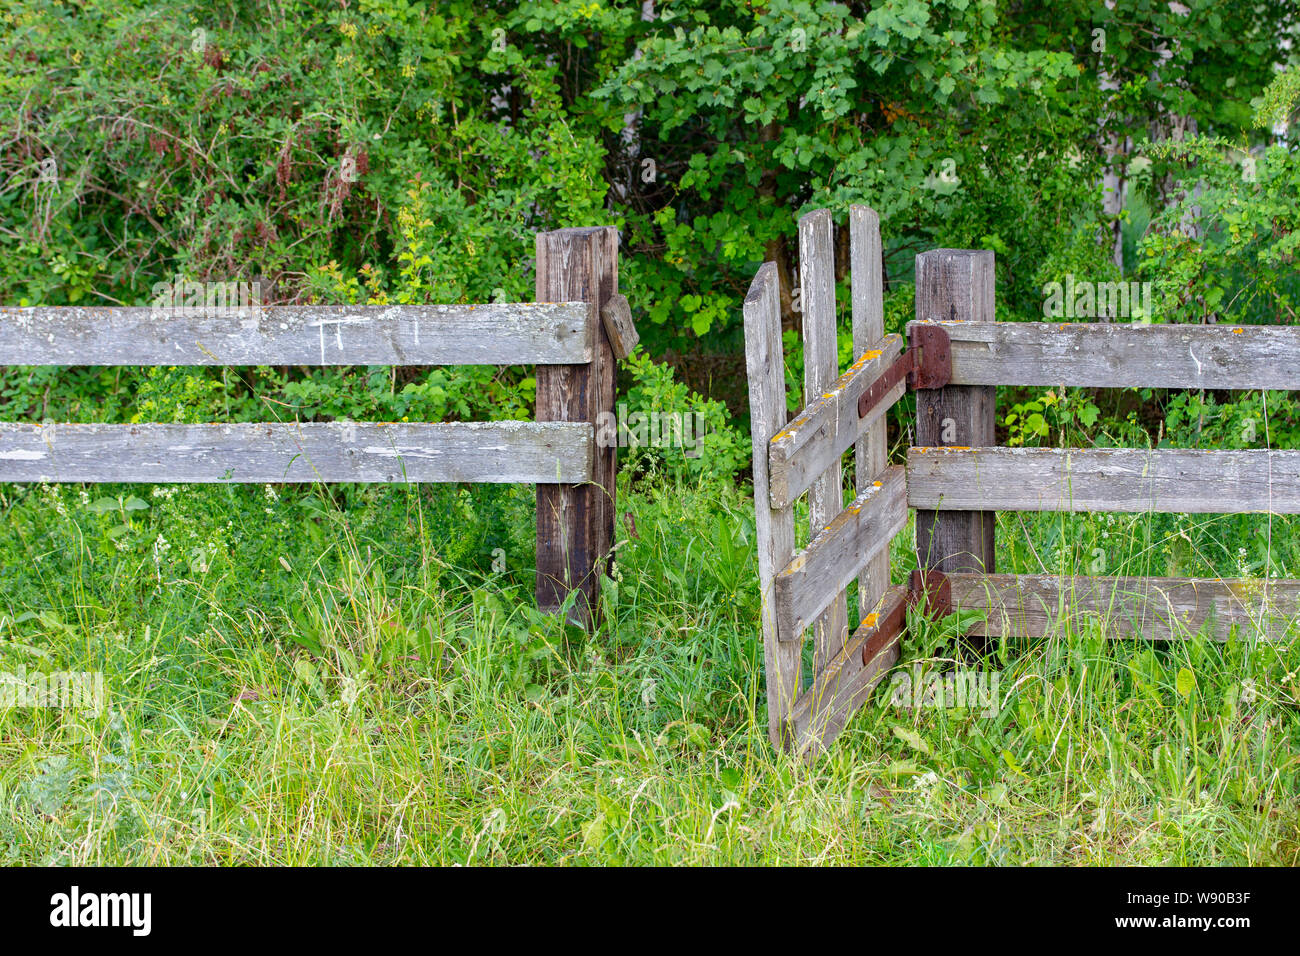 Alte hölzerne ländlichen Zaun mit Klapprigen Wicket, unbehandeltes Holz mit Zeichen des Alterns mit Schimmel und Moos. Wattle zaun Brettern. Eingangstür Wicket auf Stockfoto